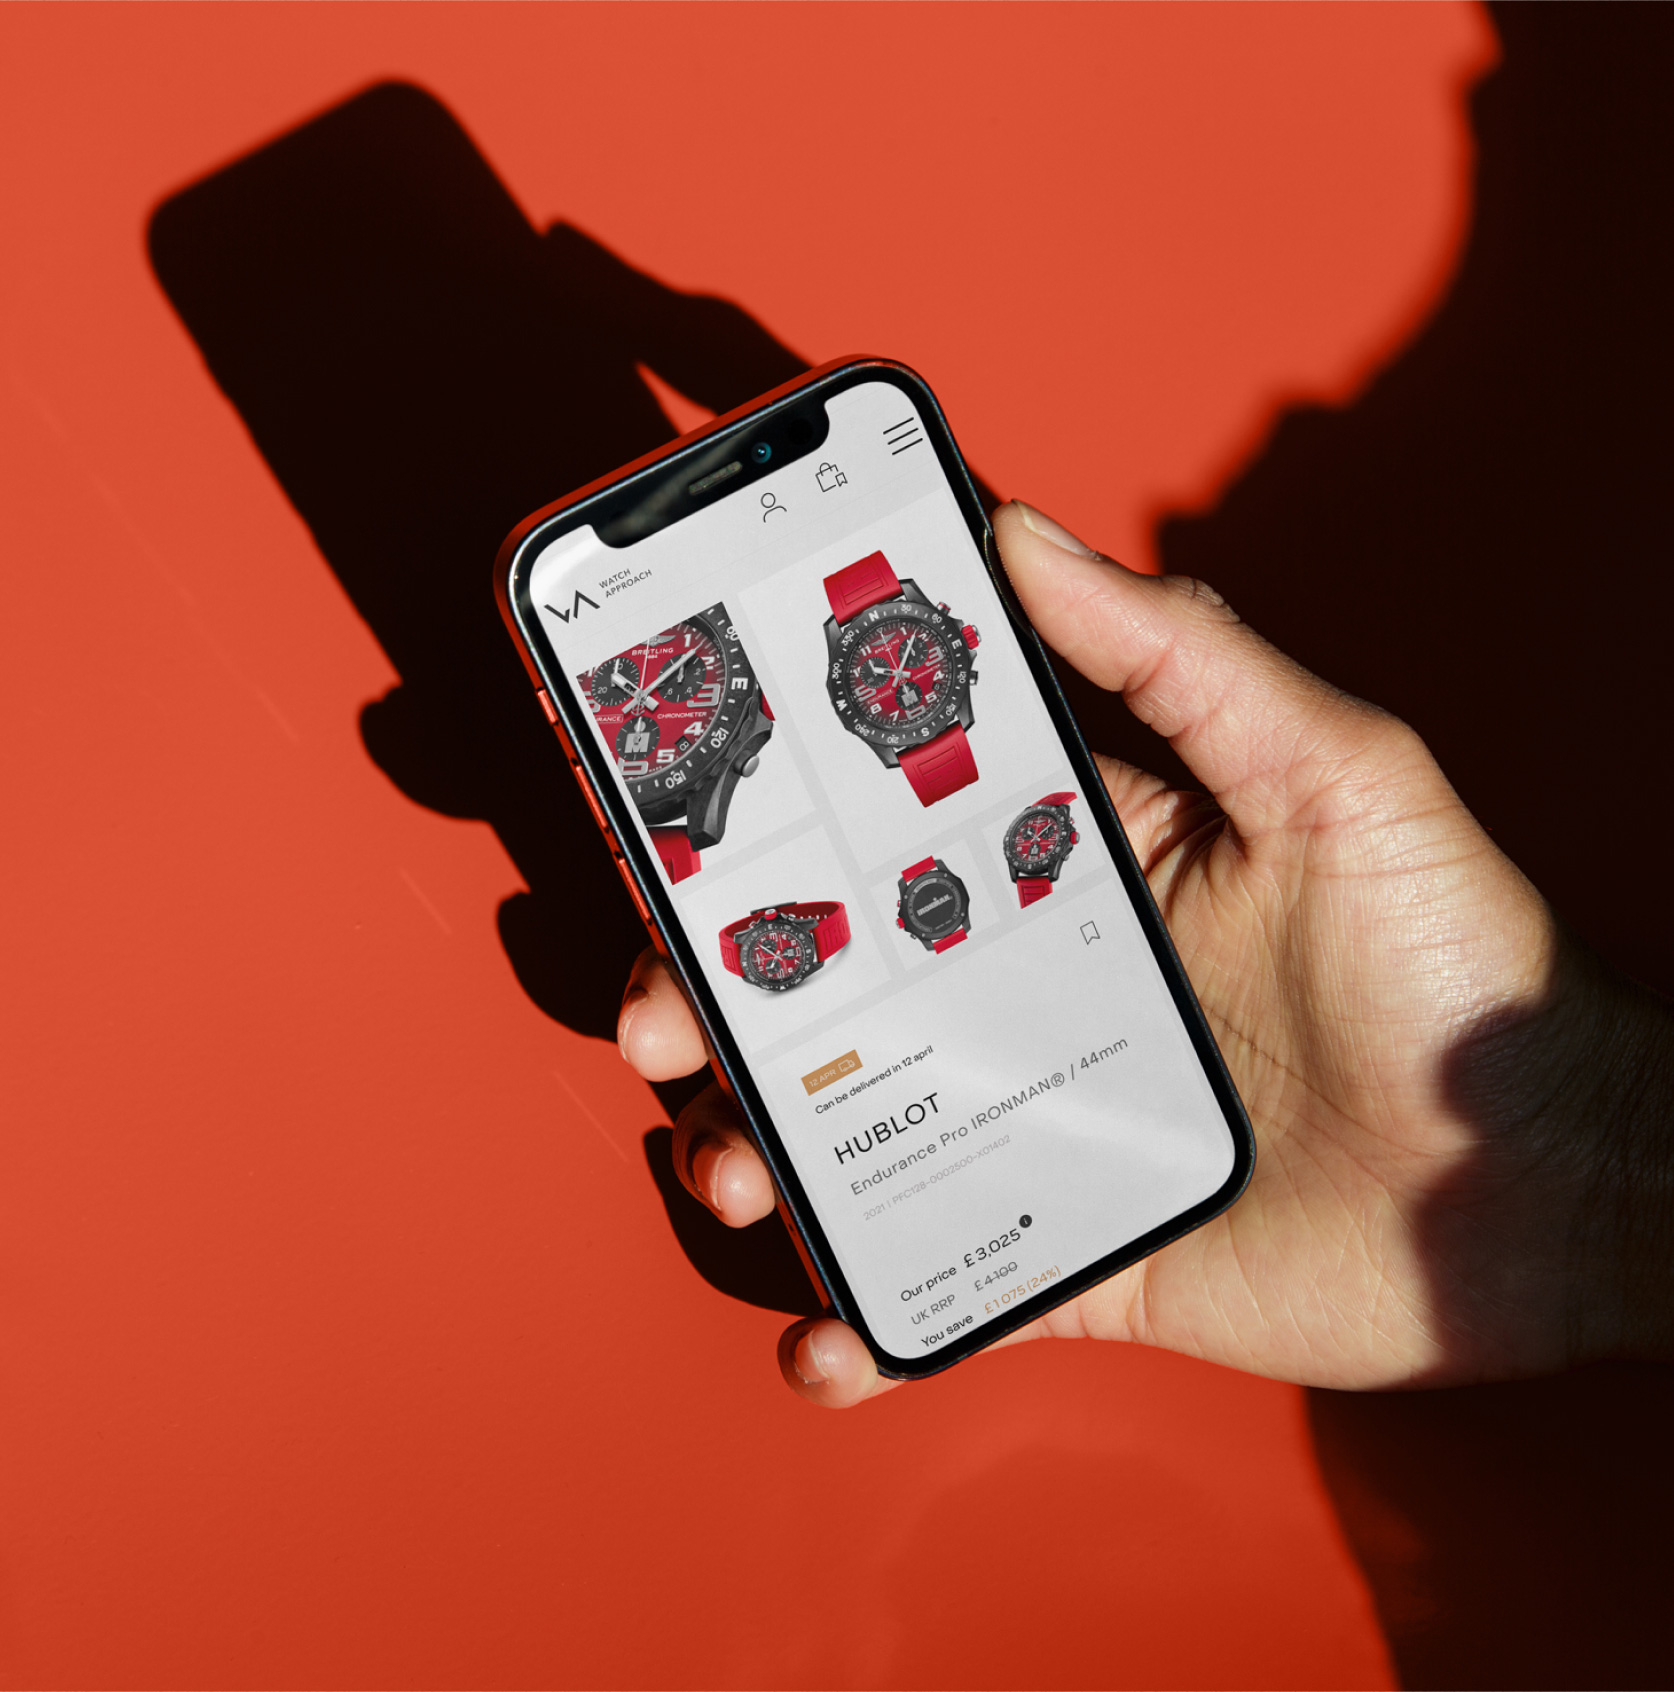 Мобильный телефон на красном фоне с отображением новый дизайна сайта Watch approach.